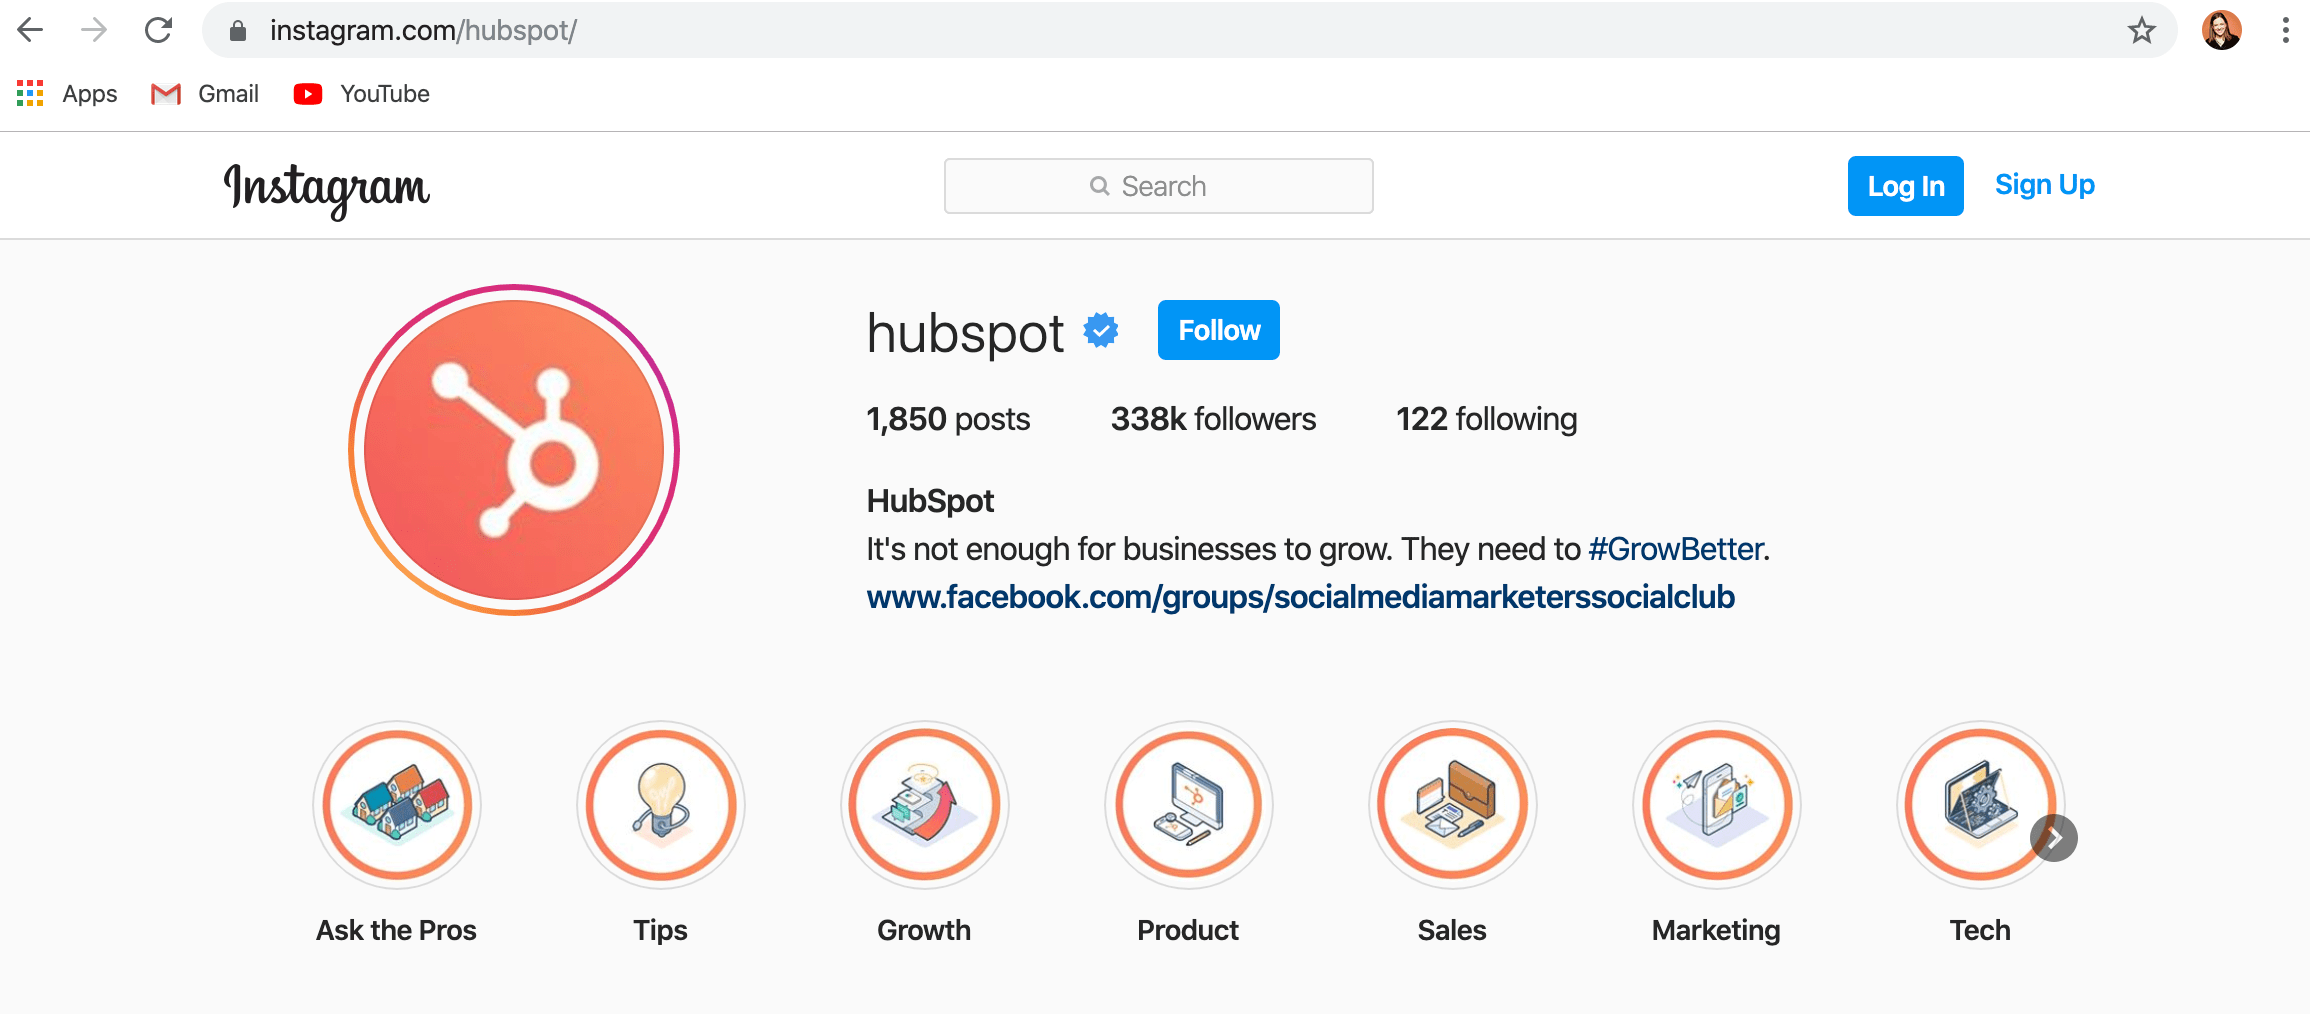 desktop version of hubspot instagram account 